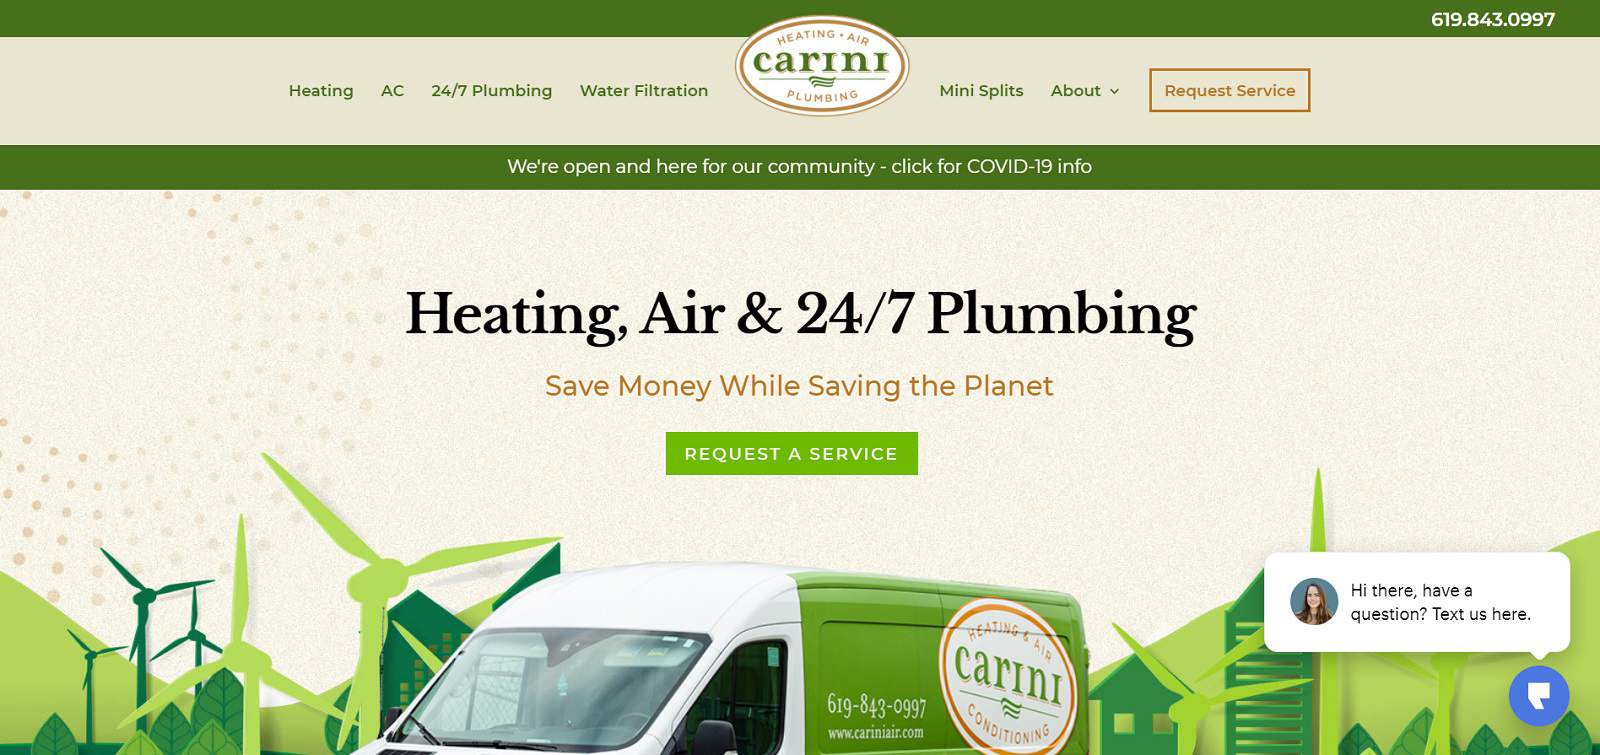 carini homepage